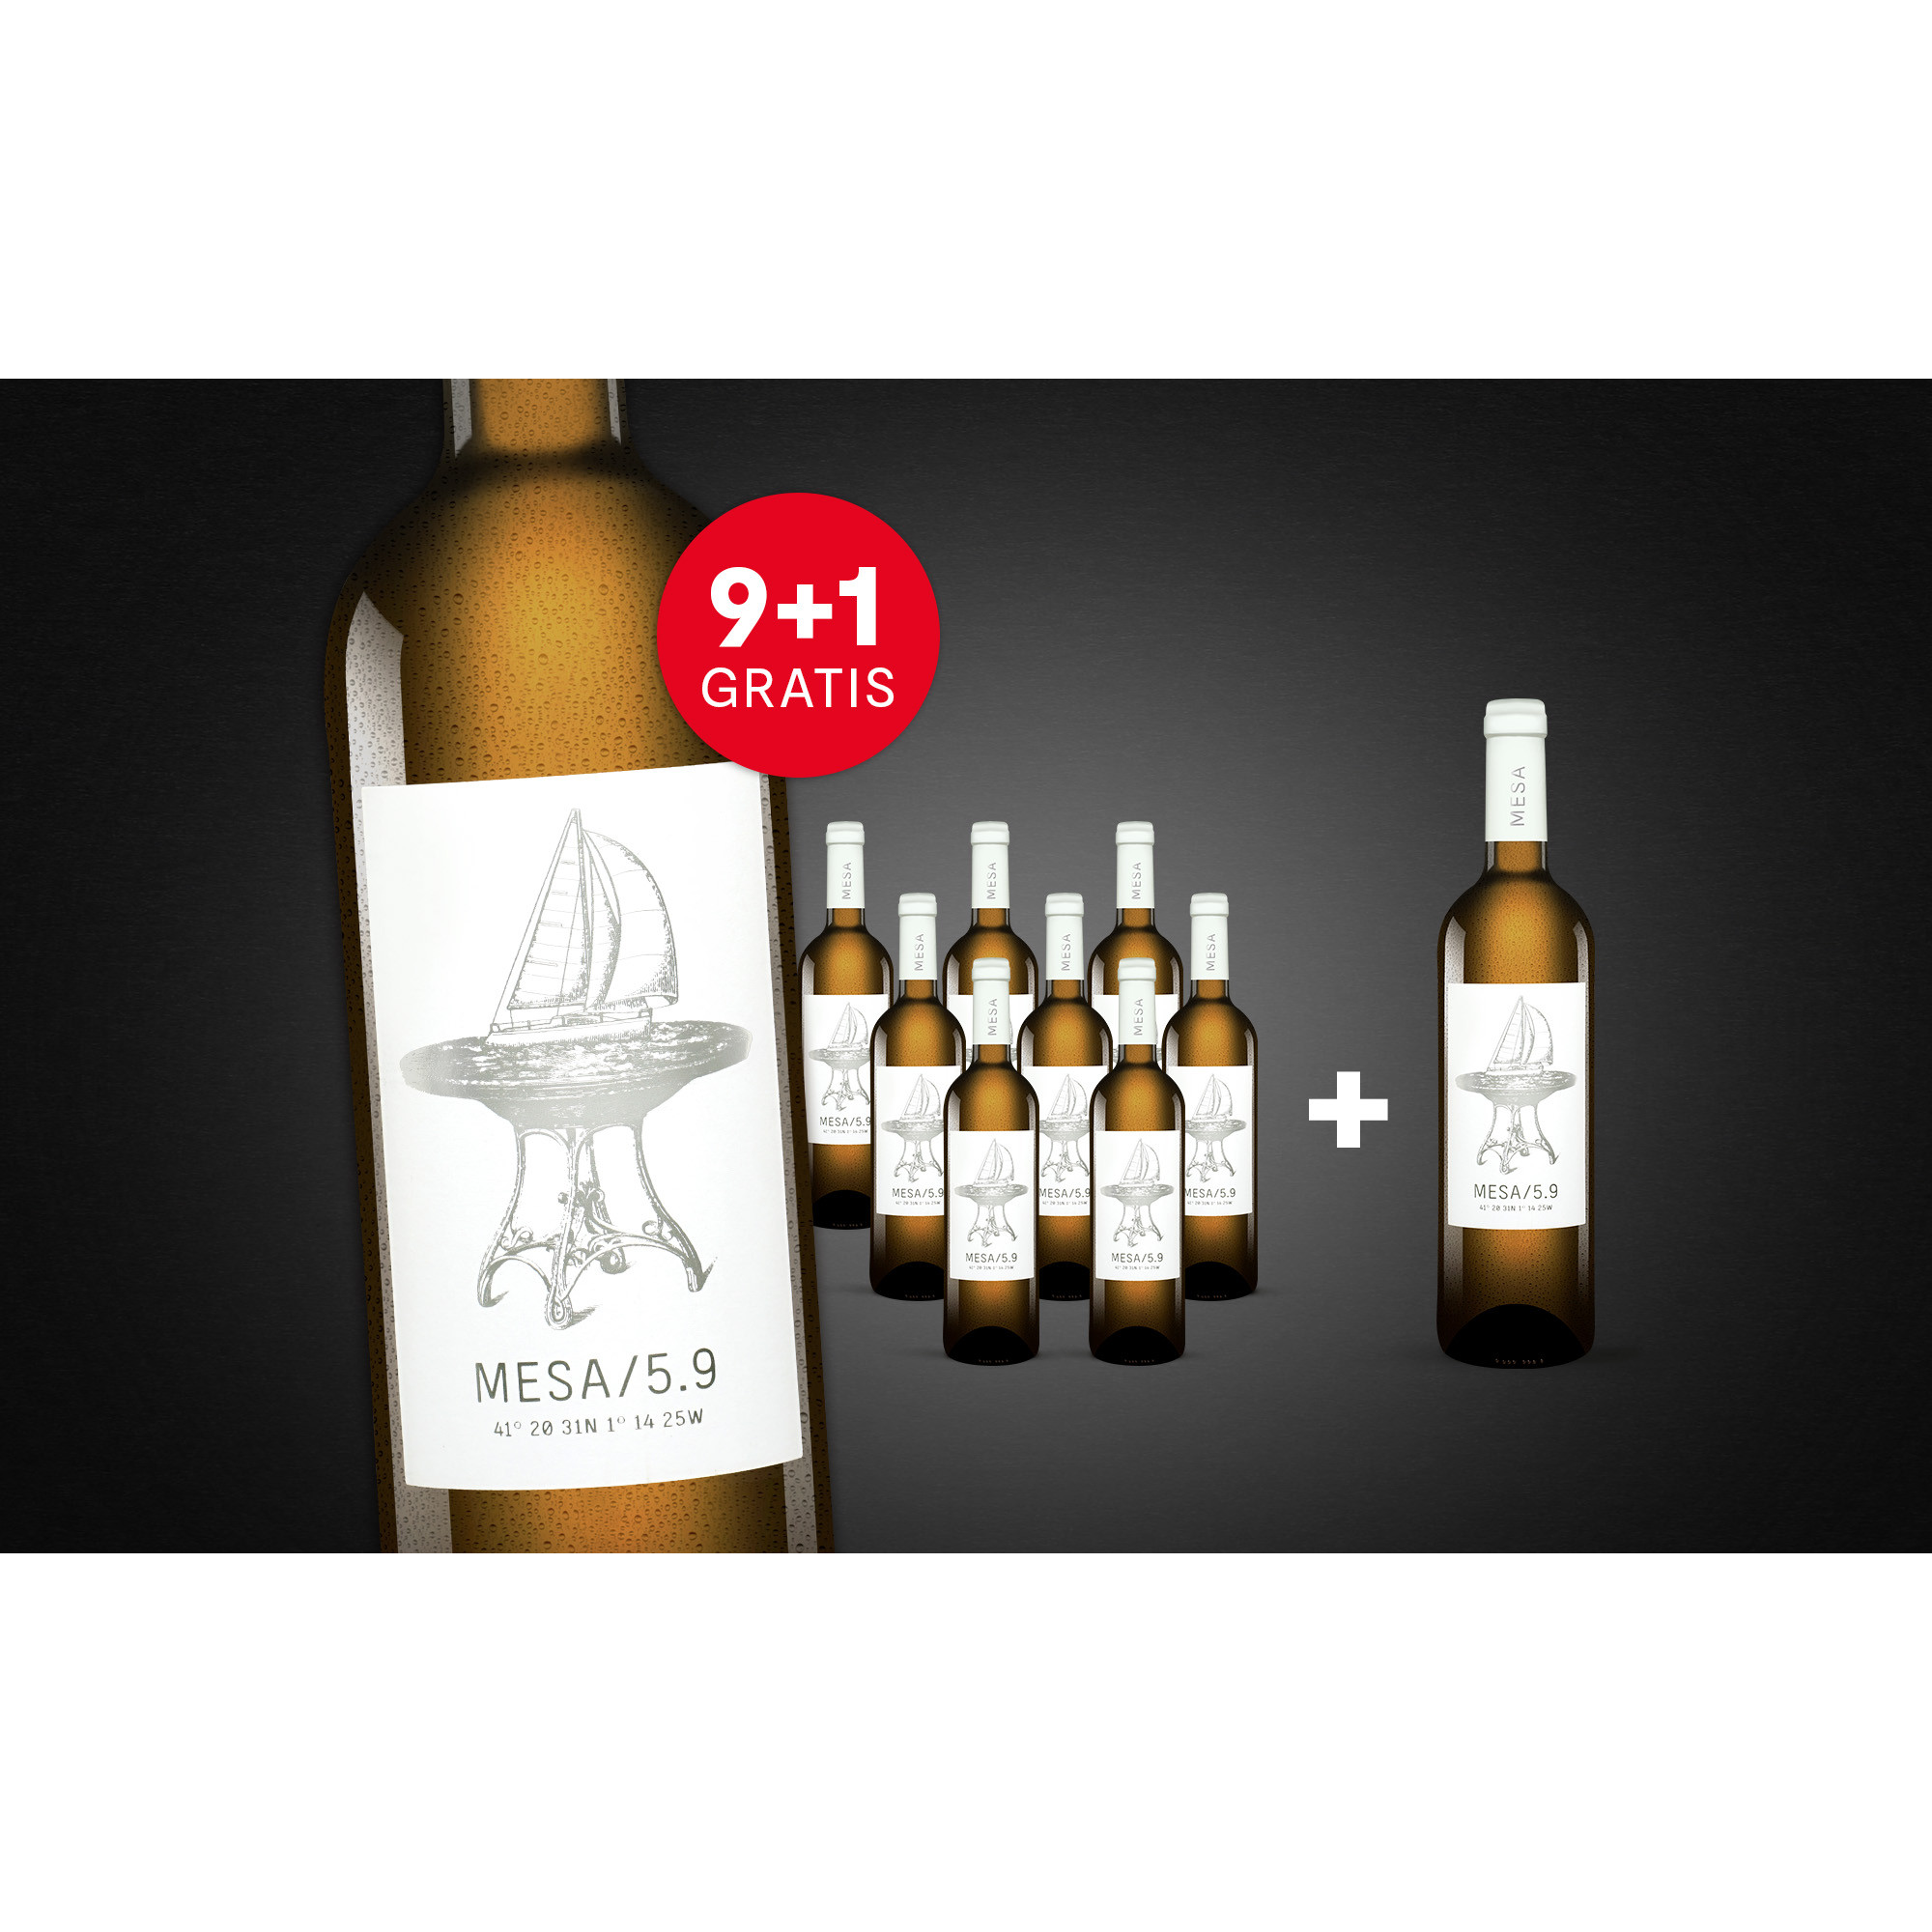 MESA/5.9 Blanco mit 1 Flasche GRATIS  7.5L 13% Vol. Trocken Weinpaket aus Spanien 34793 vinos DE